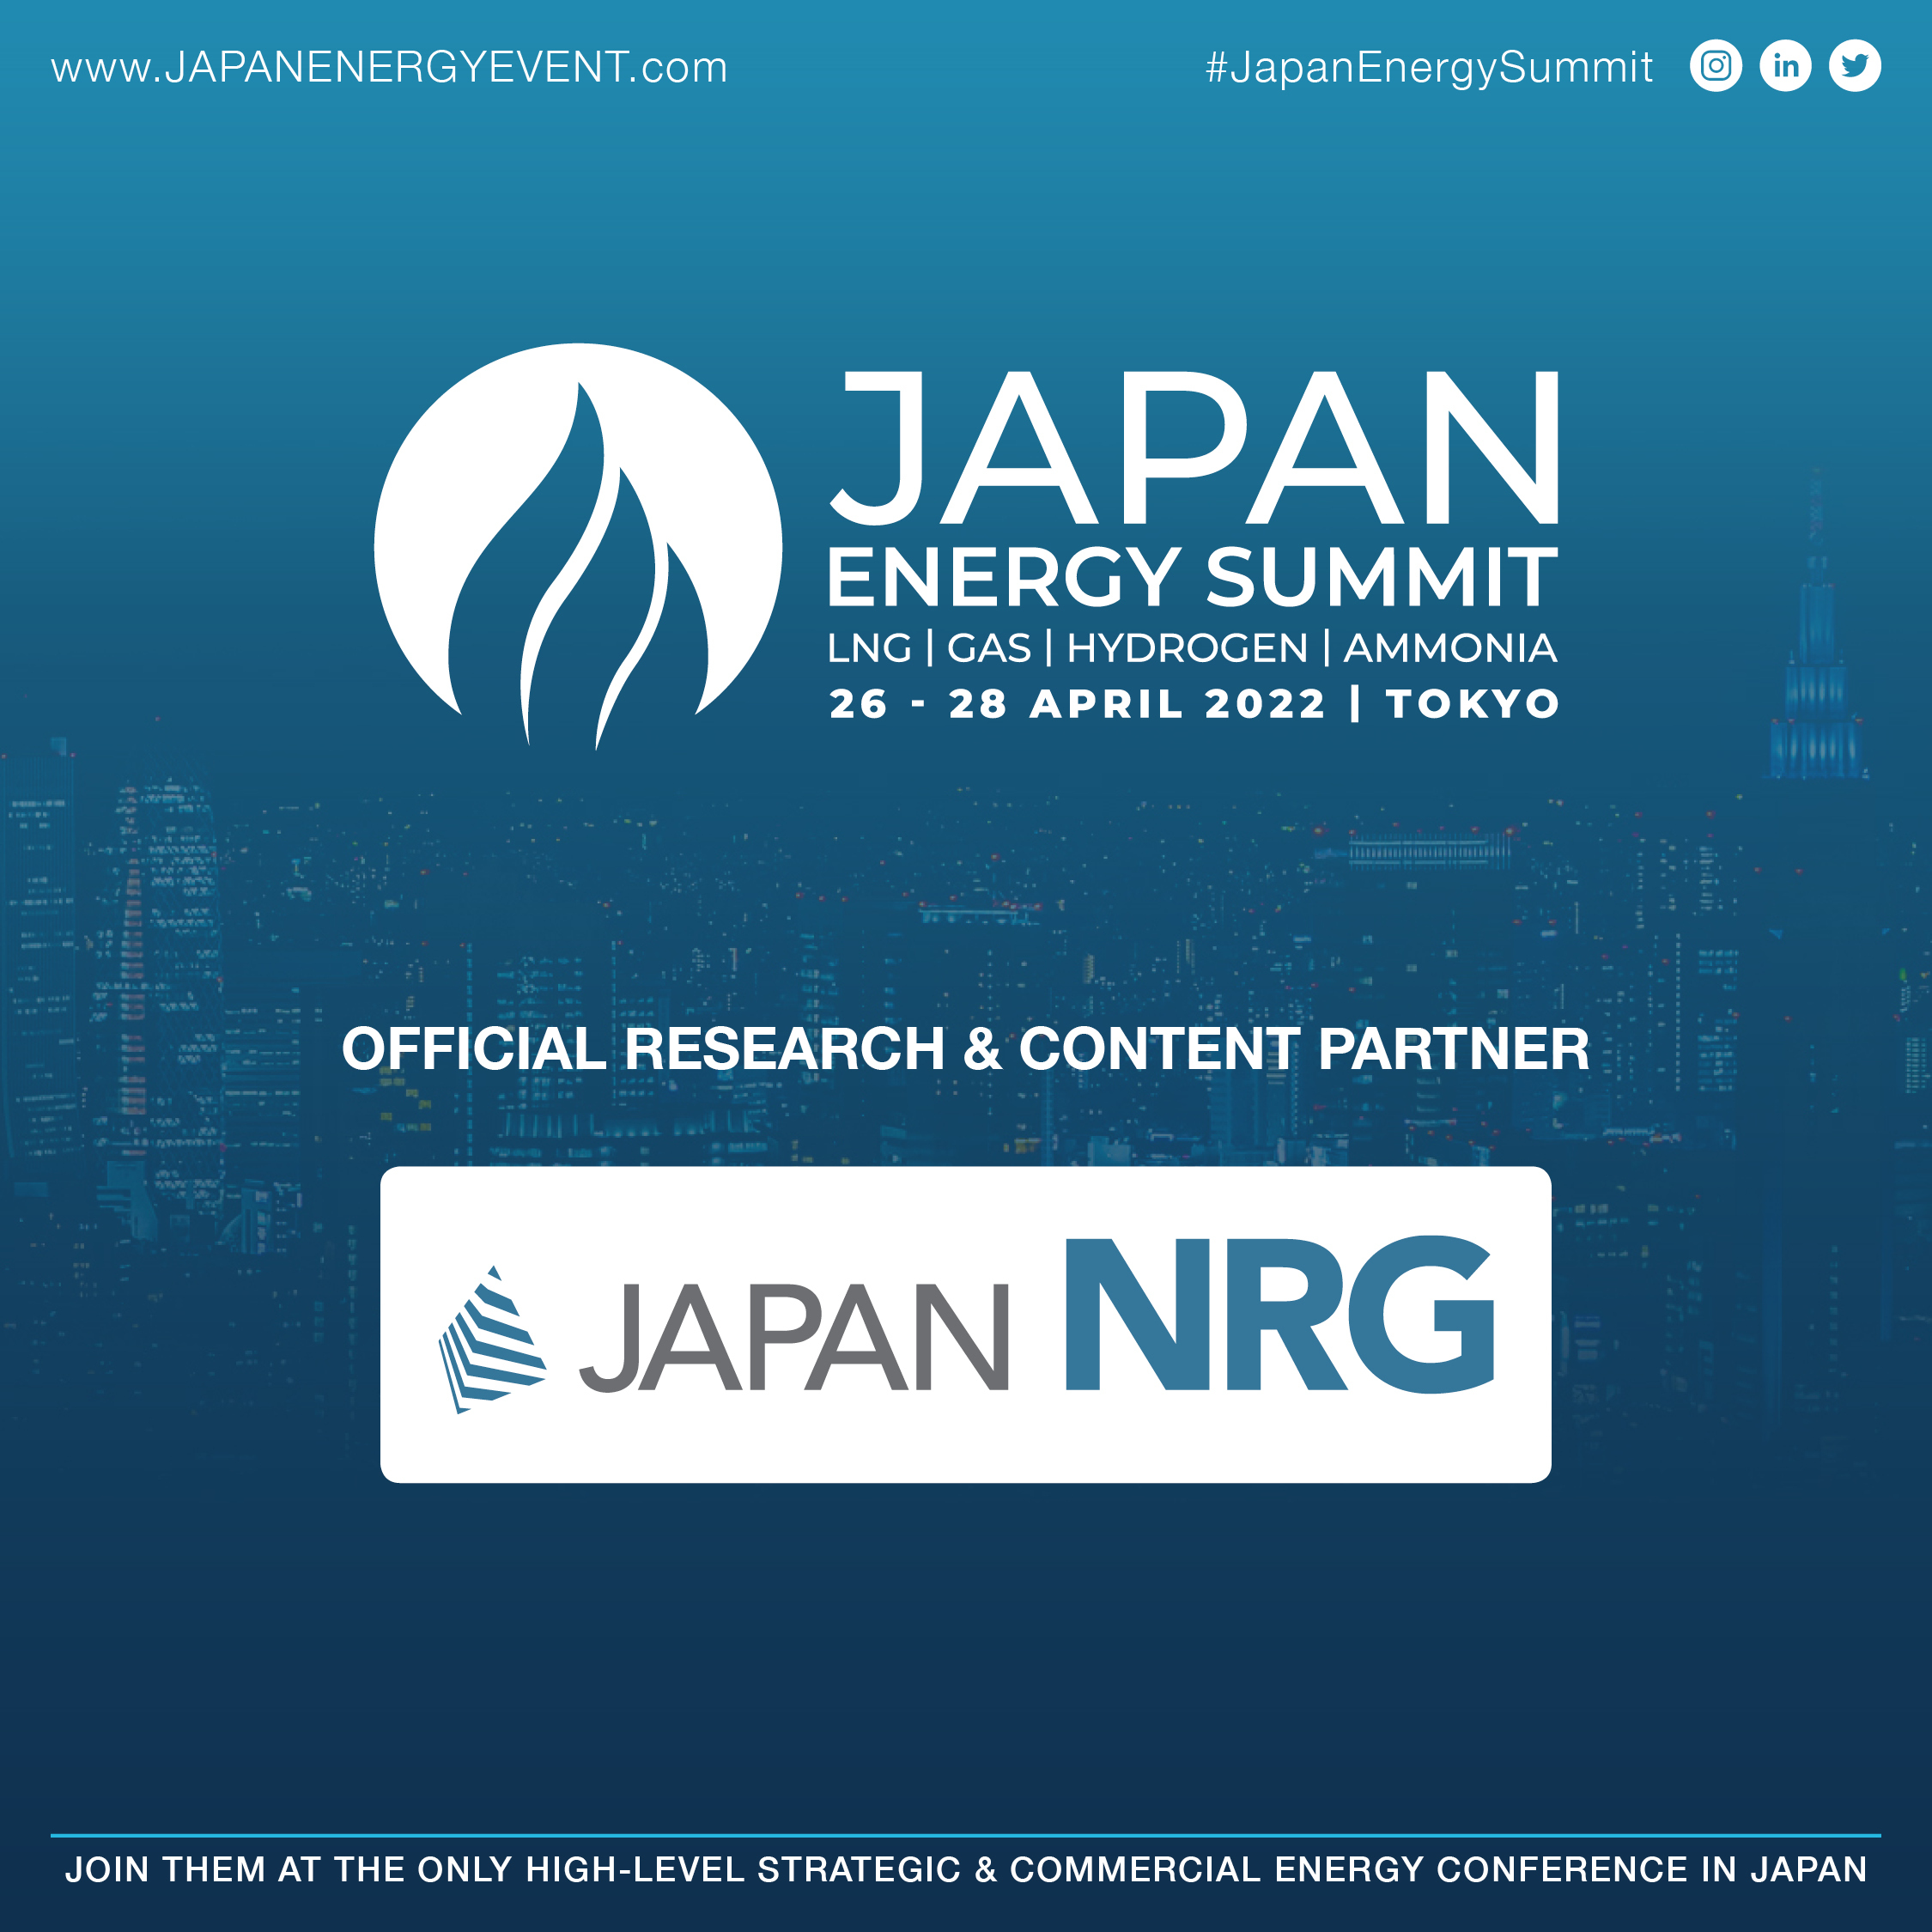 Japan Energy Summit